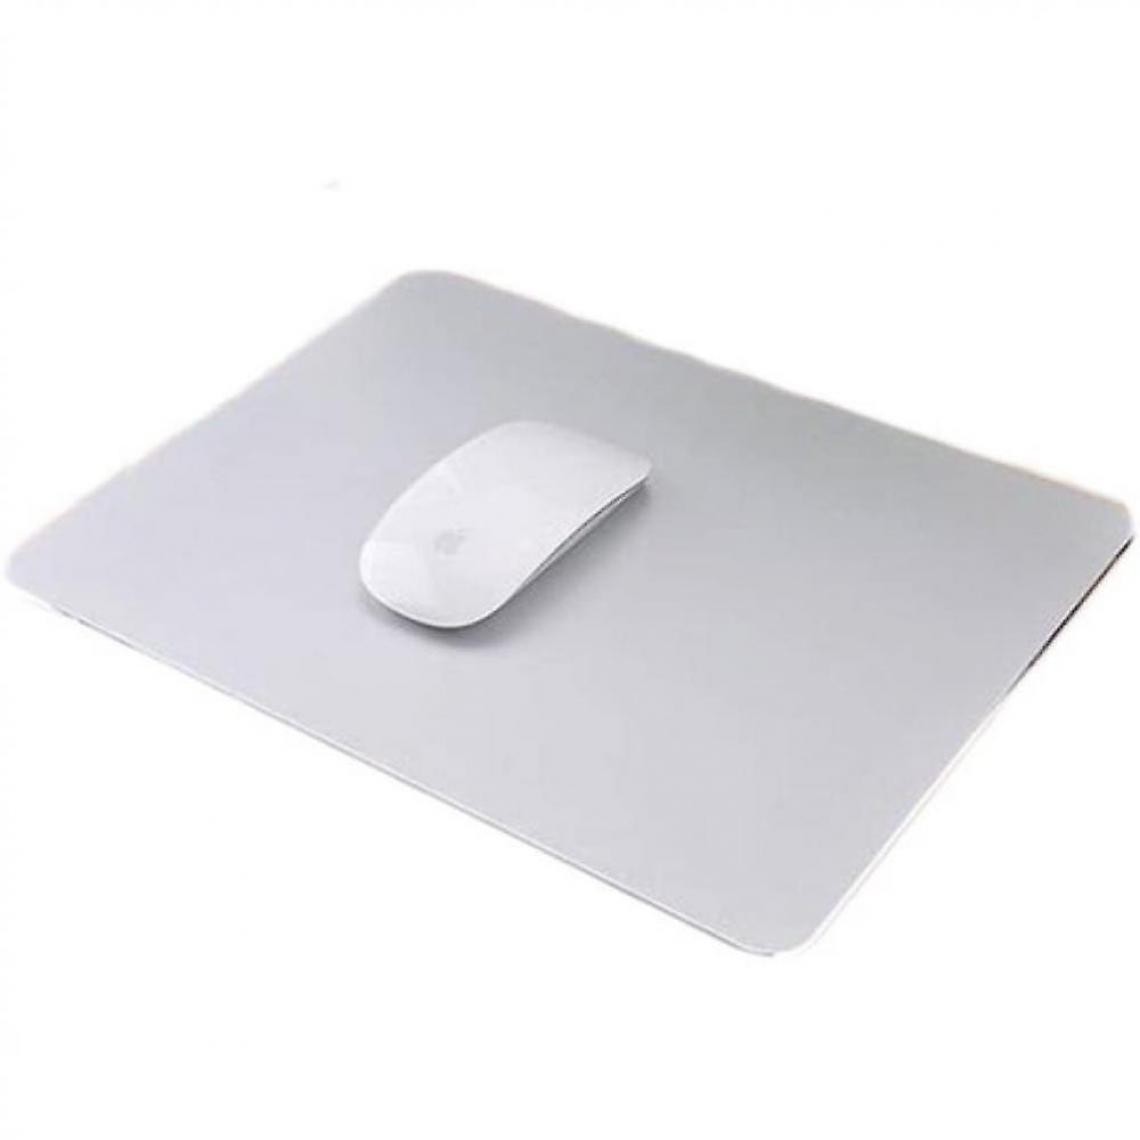 Universal - Tapis de souris pour jeux Tapis de souris en aluminium Tapis de souris pour ordinateur portable (240x200mm) (argent) - Tapis de souris